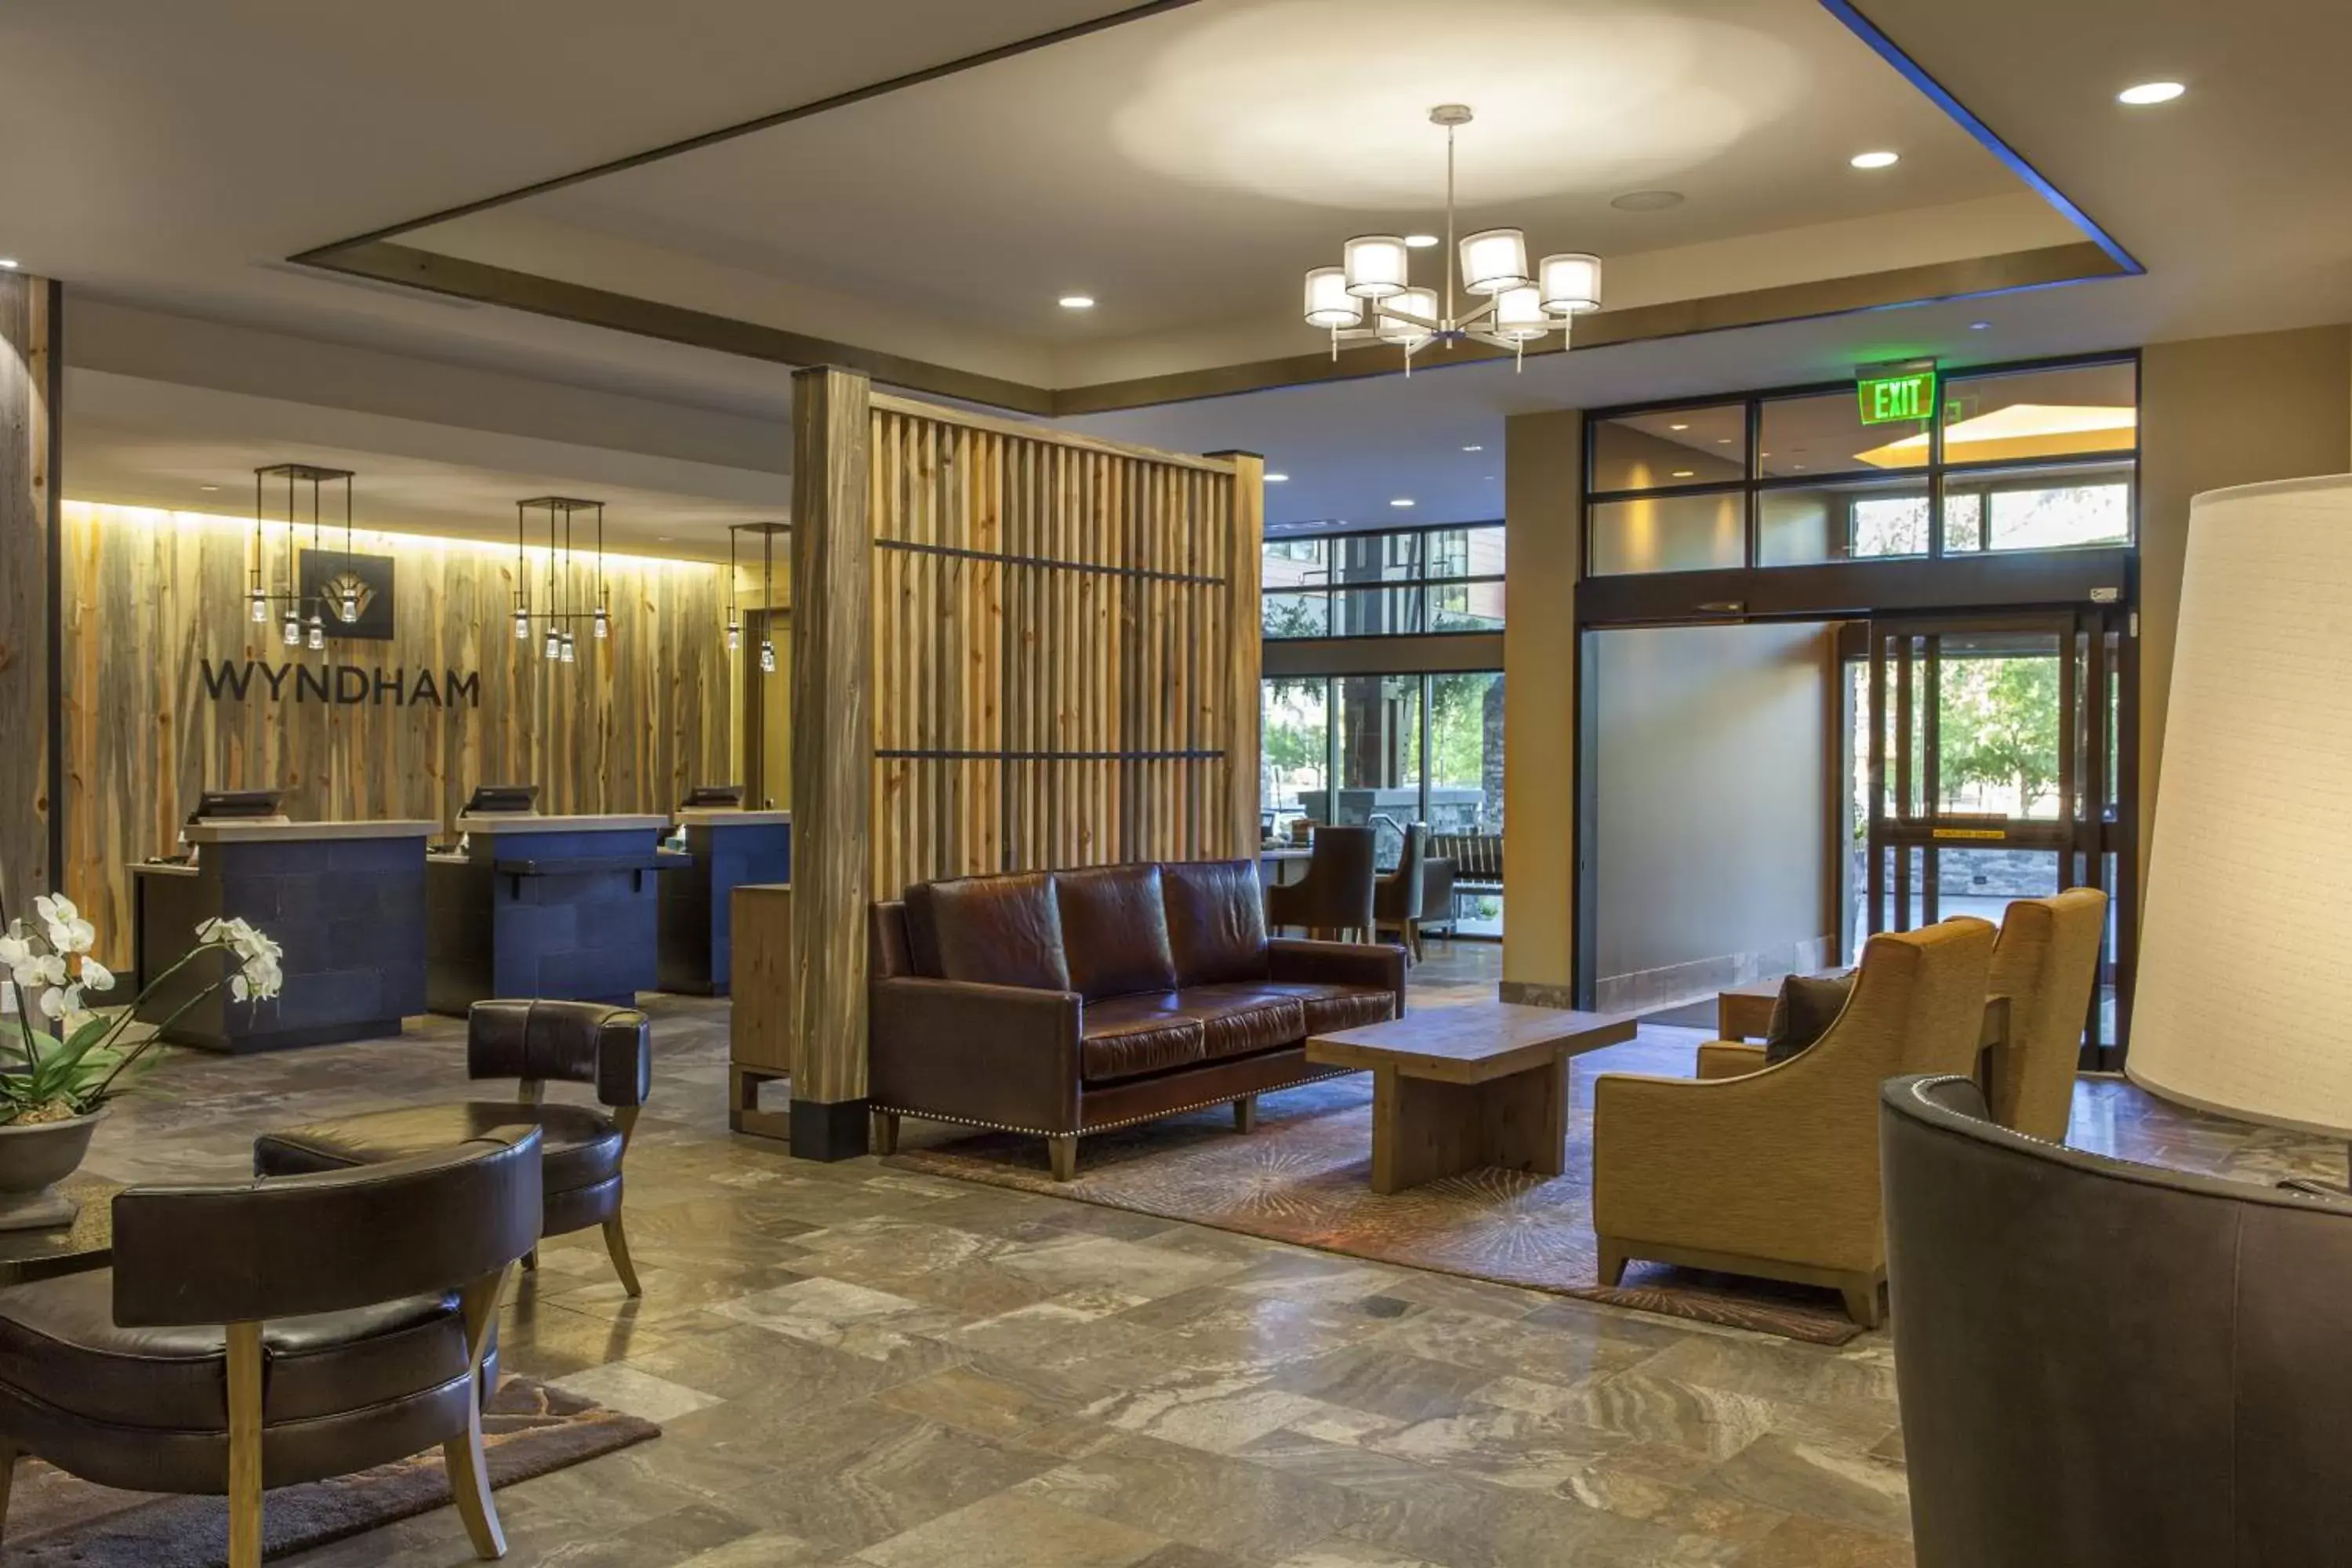 Lobby or reception, Lobby/Reception in Club Wyndham Resort at Avon